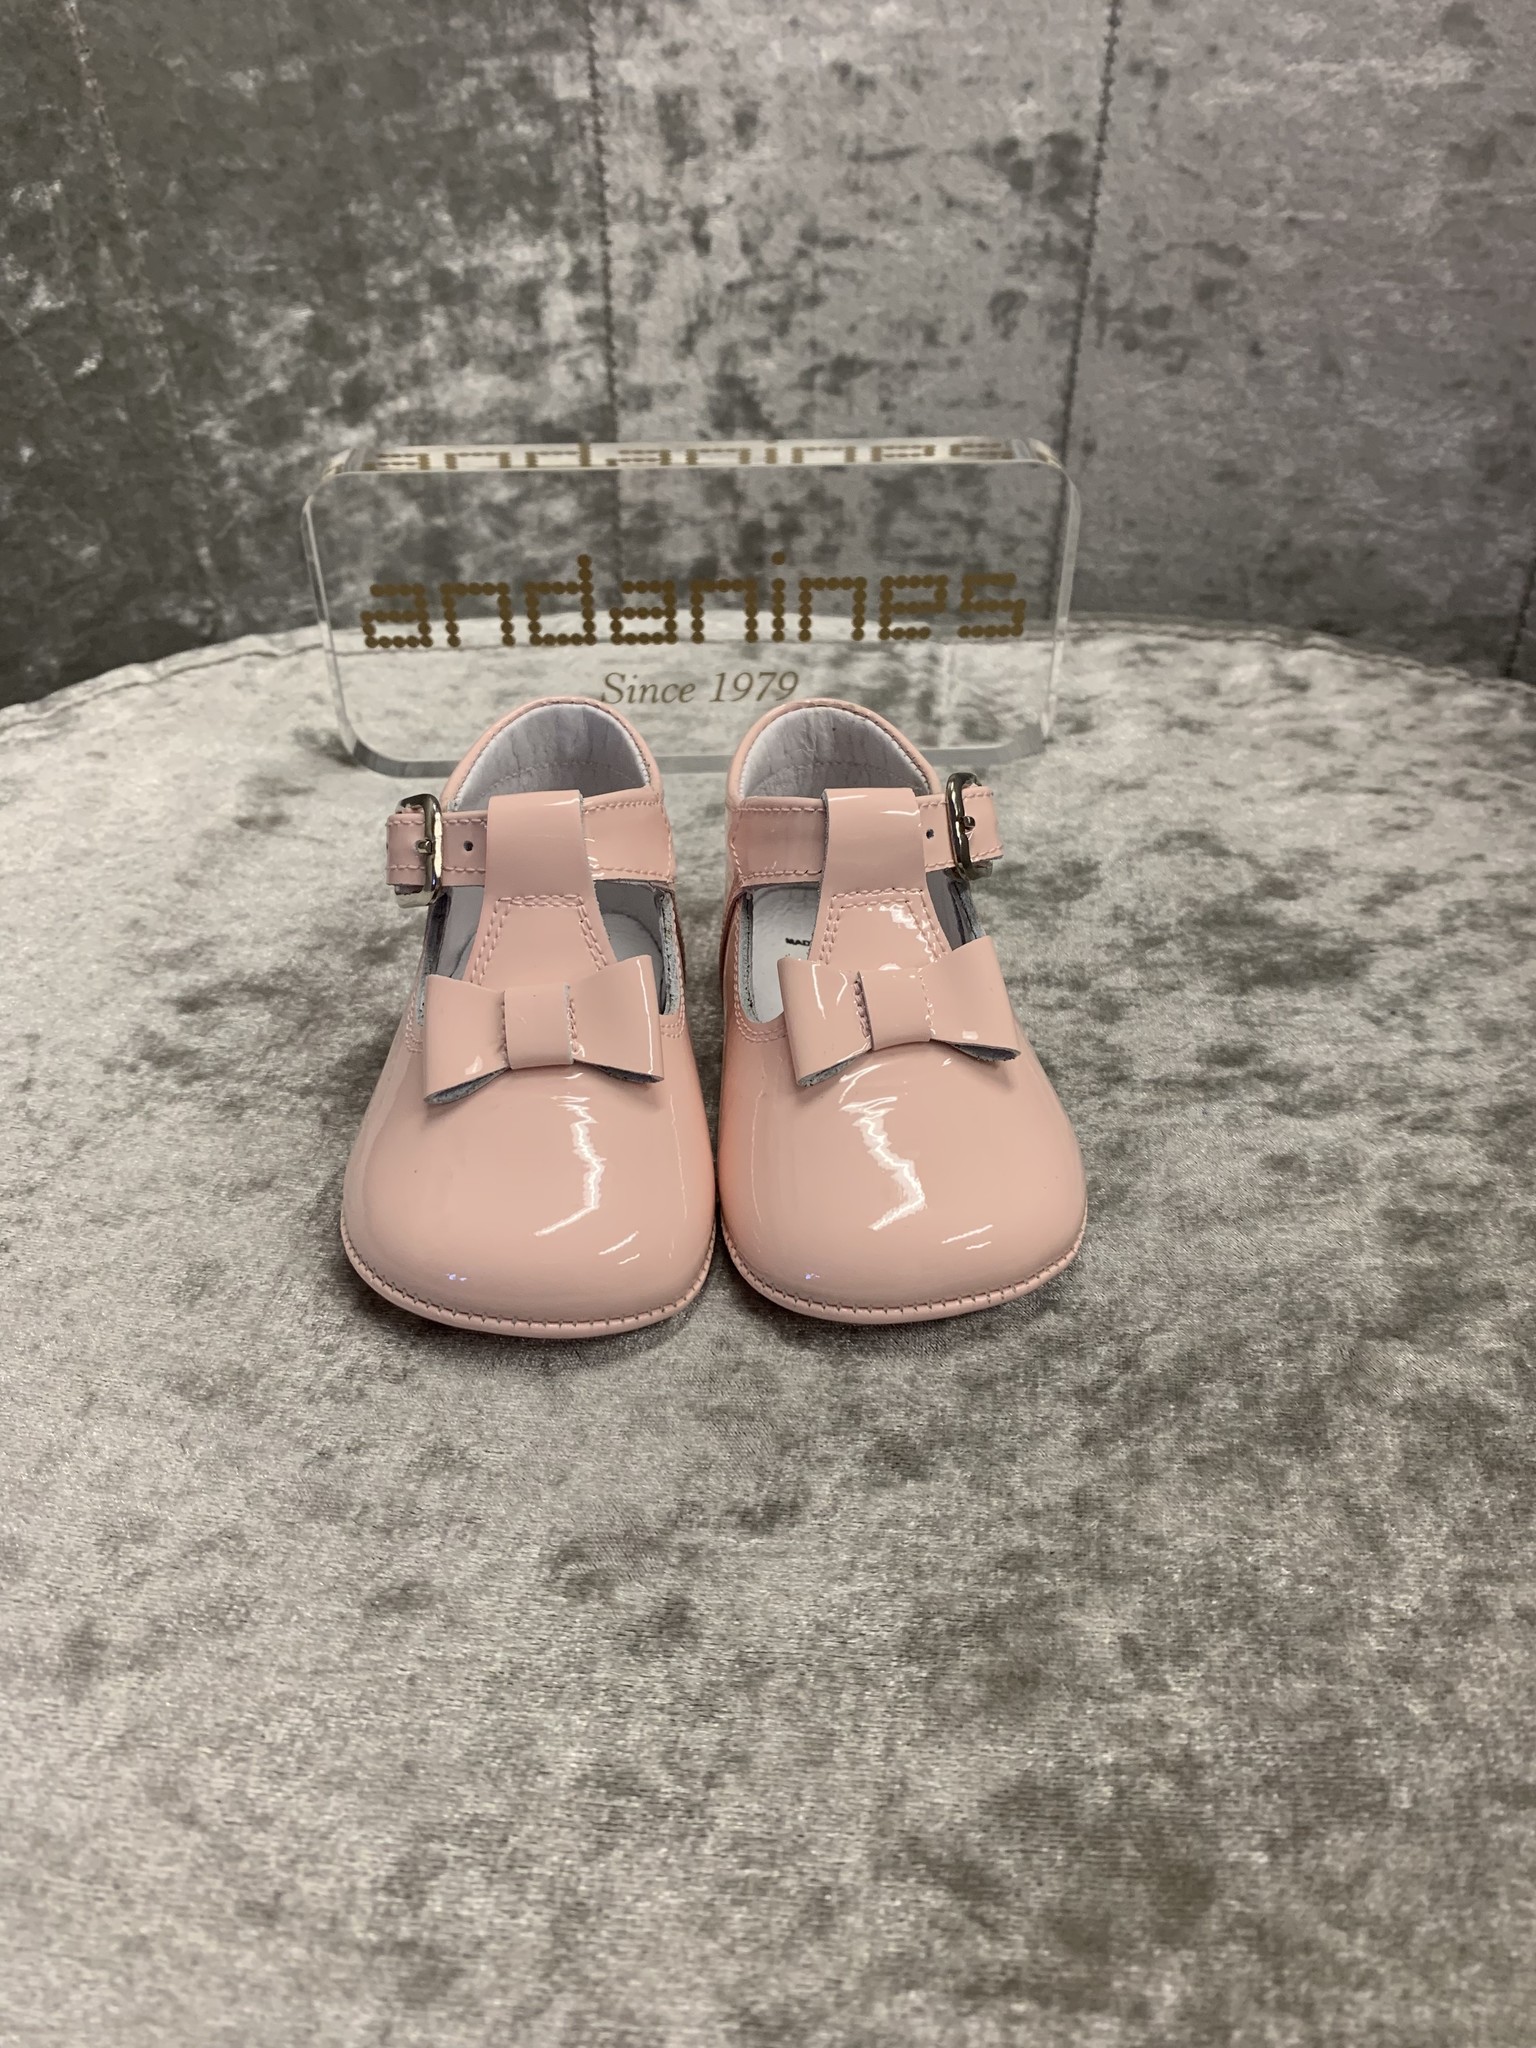 pink pram shoes